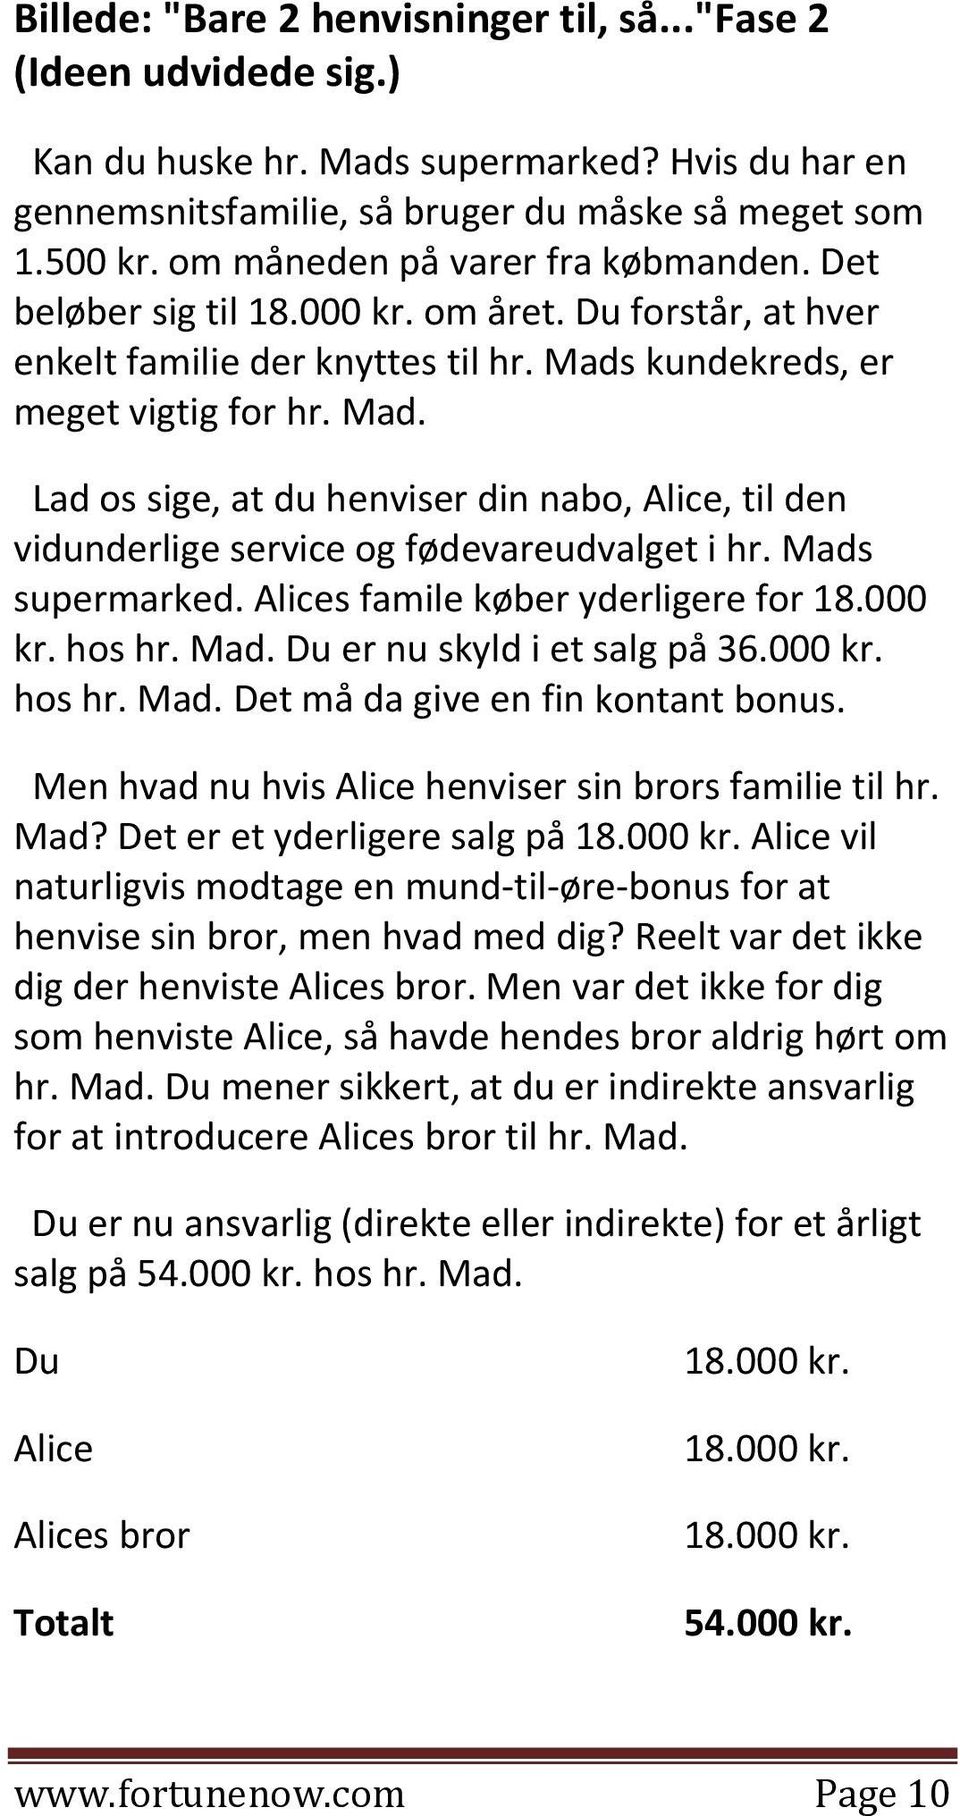 kundekreds, er meget vigtig for hr. Mad. Lad os sige, at du henviser din nabo, Alice, til den vidunderlige service og fødevareudvalget i hr. Mads supermarked. Alices famile køber yderligere for 18.